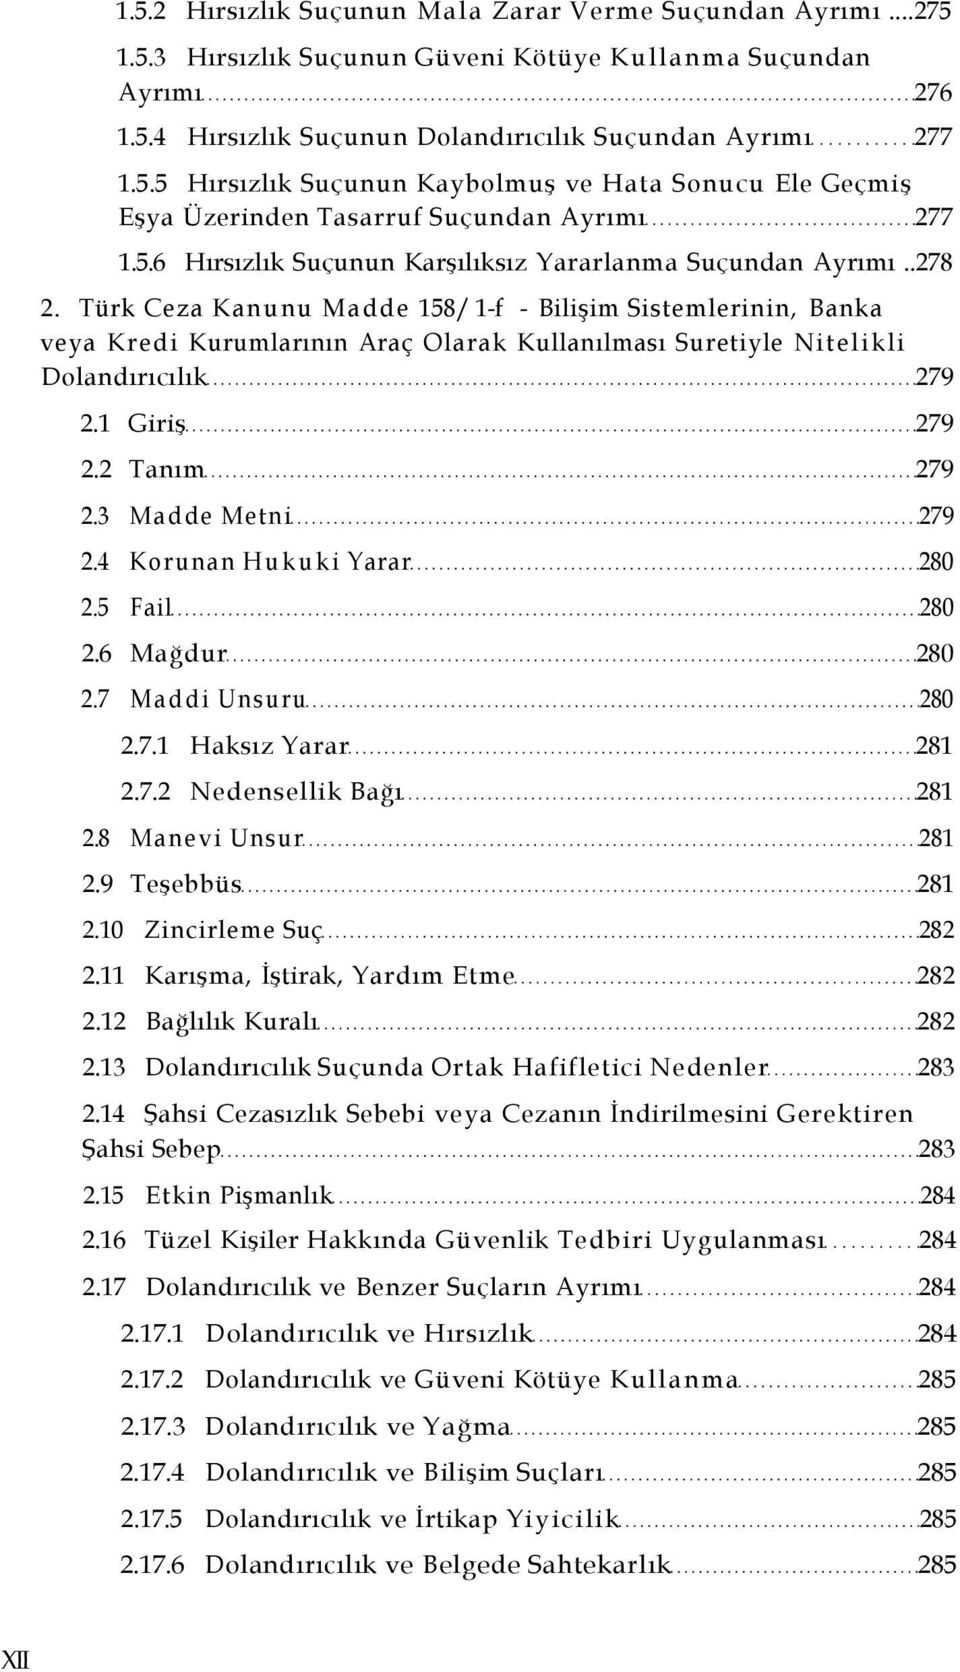 Türk Ceza Kanunu Madde 158/ 1-f - Bilişim Sistemlerinin, Banka veya Kredi Kurumlarının Araç Olarak Kullanılması Suretiyle Nitelikli Dolandırıcılık 279 2.1 Giriş 279 2.2 Tanım 279 2.